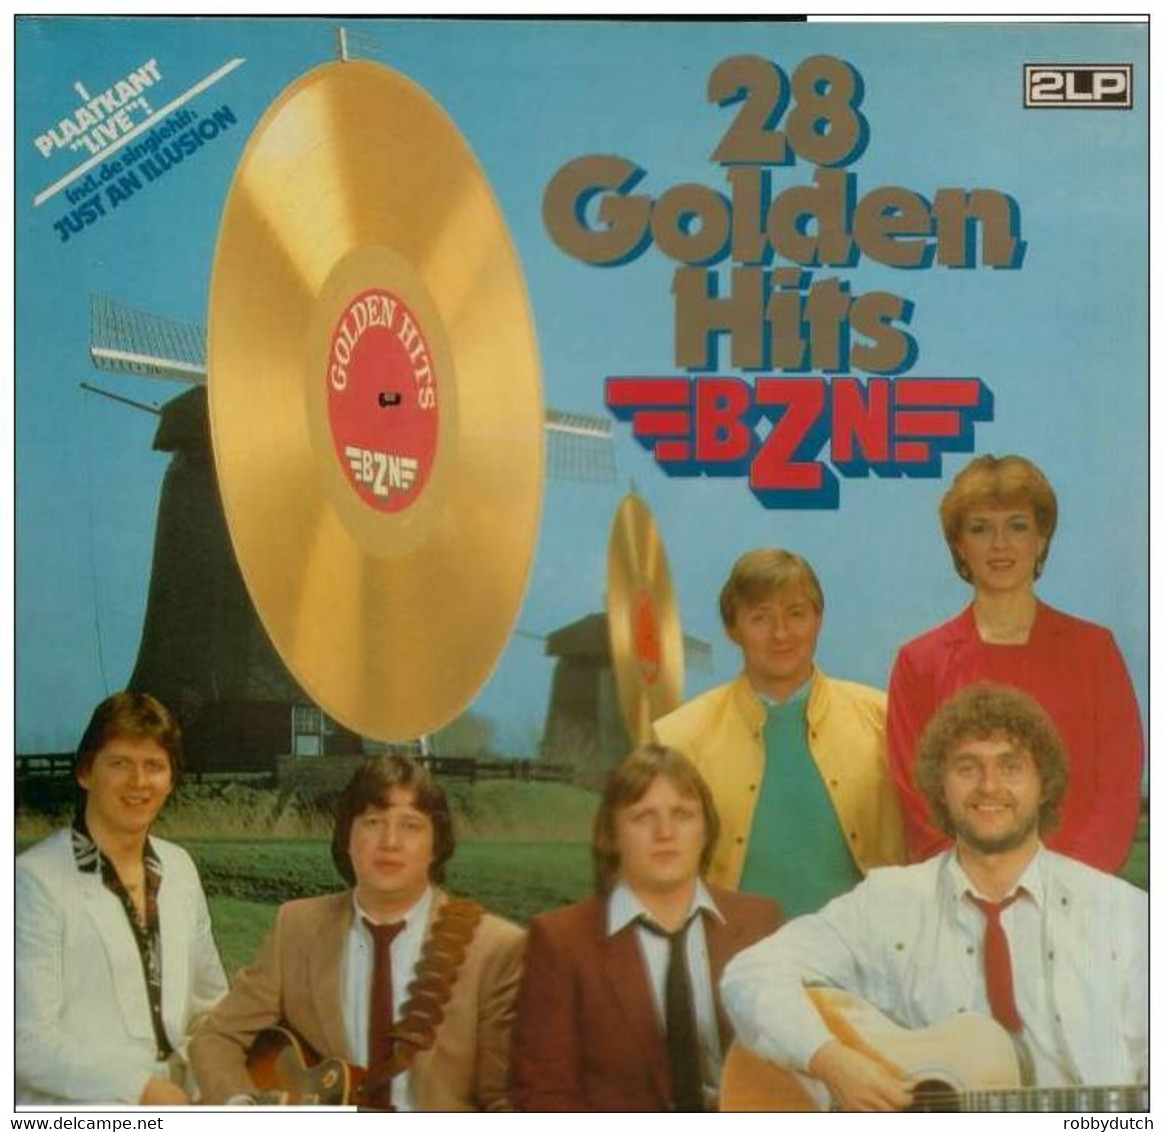 * 2LP * BZN - 28 GOLDEN HITS  (Nederpop 1983) - Disco, Pop